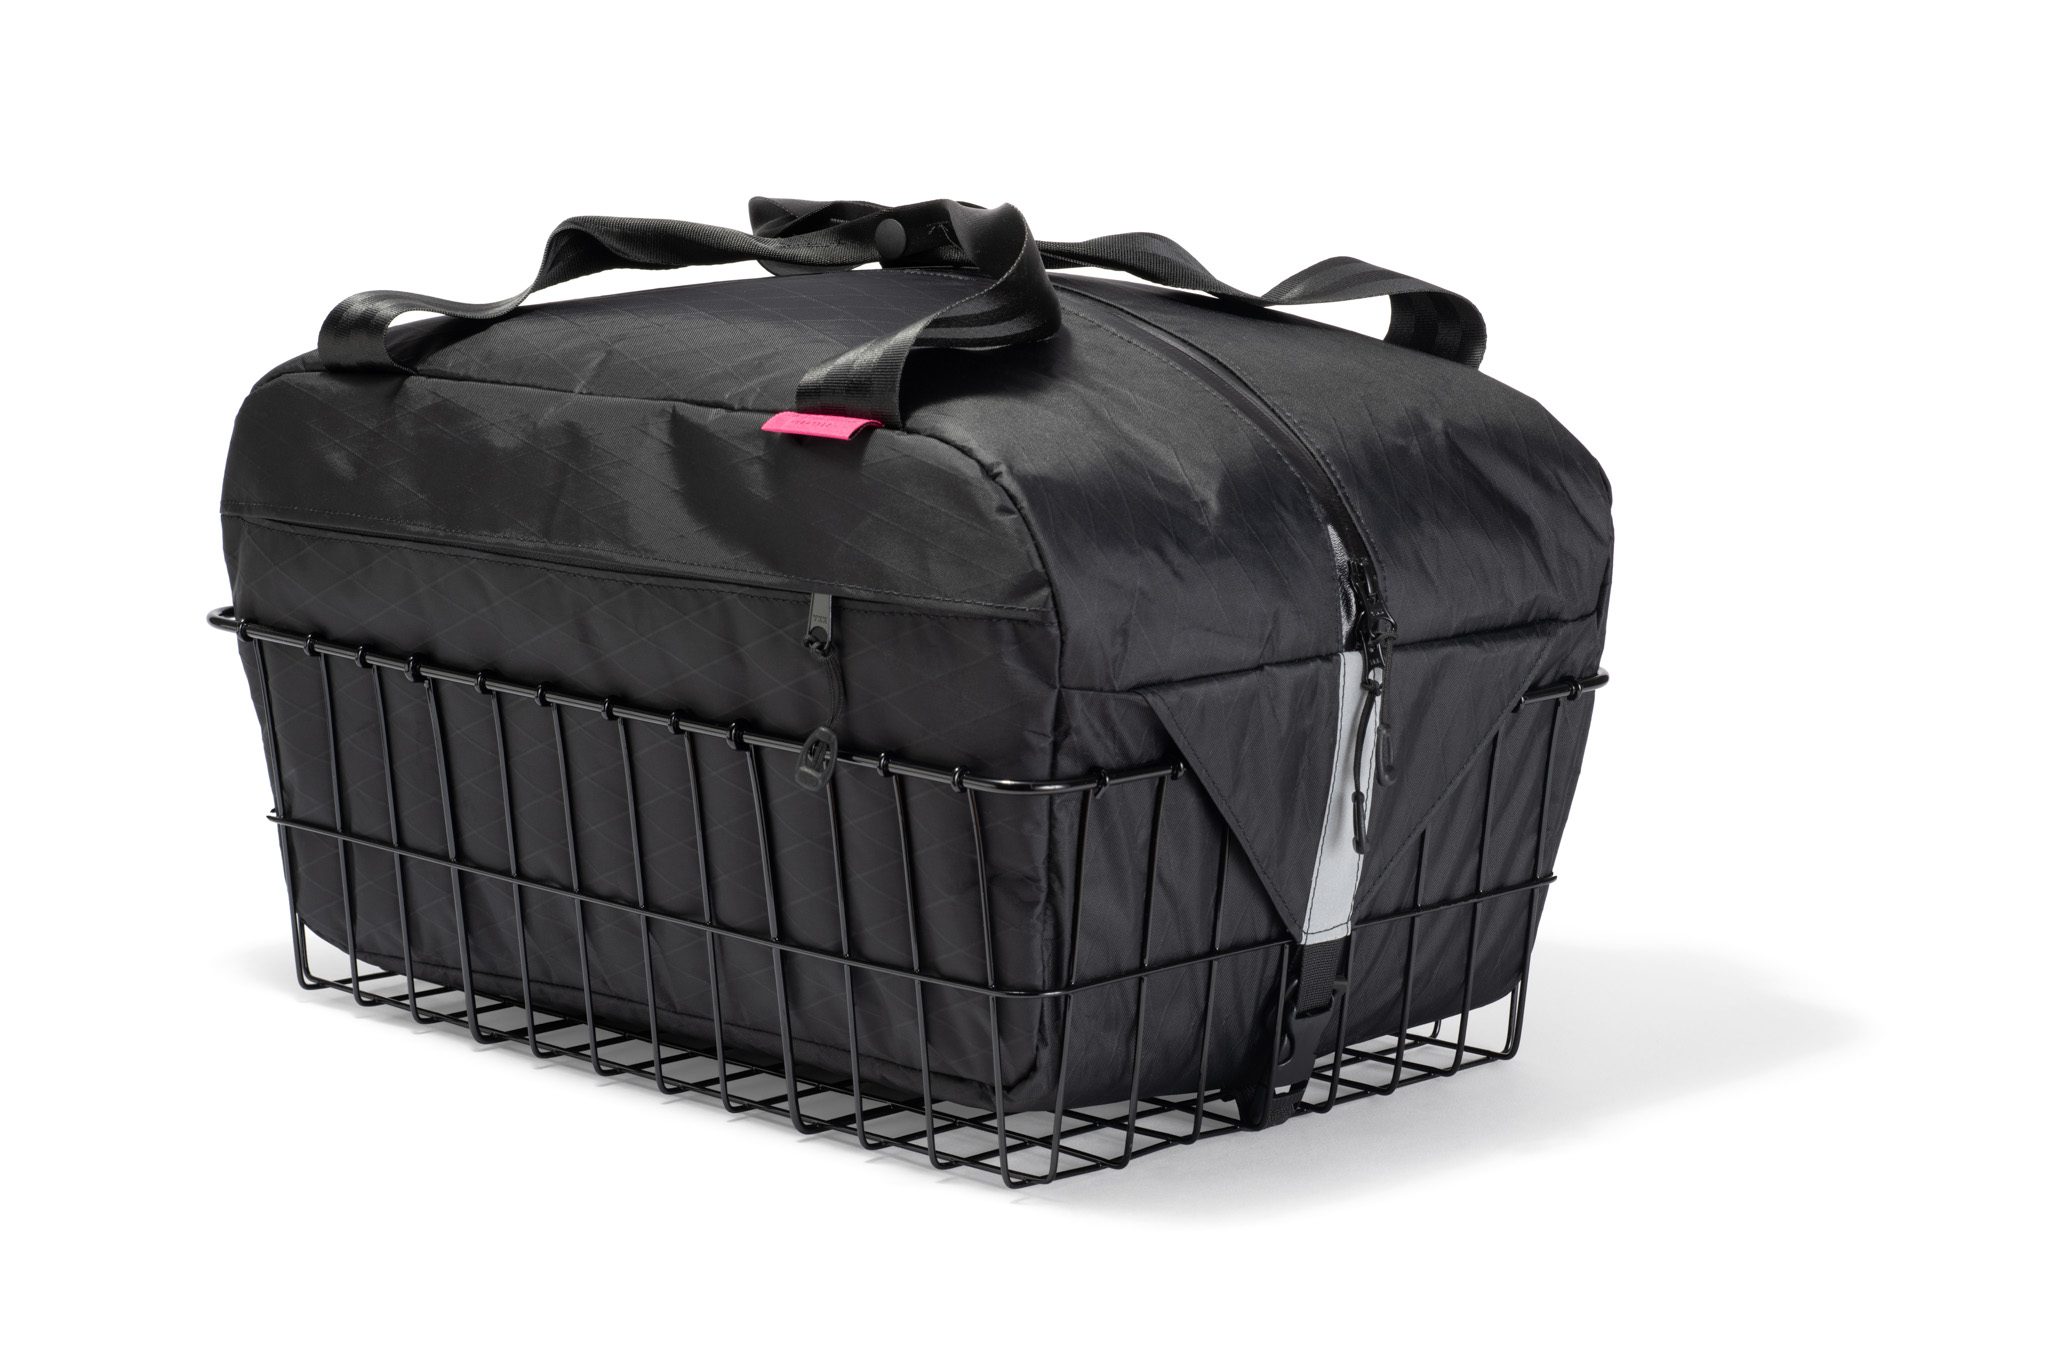 2021 Sugarloaf Basket Bag black-vx21